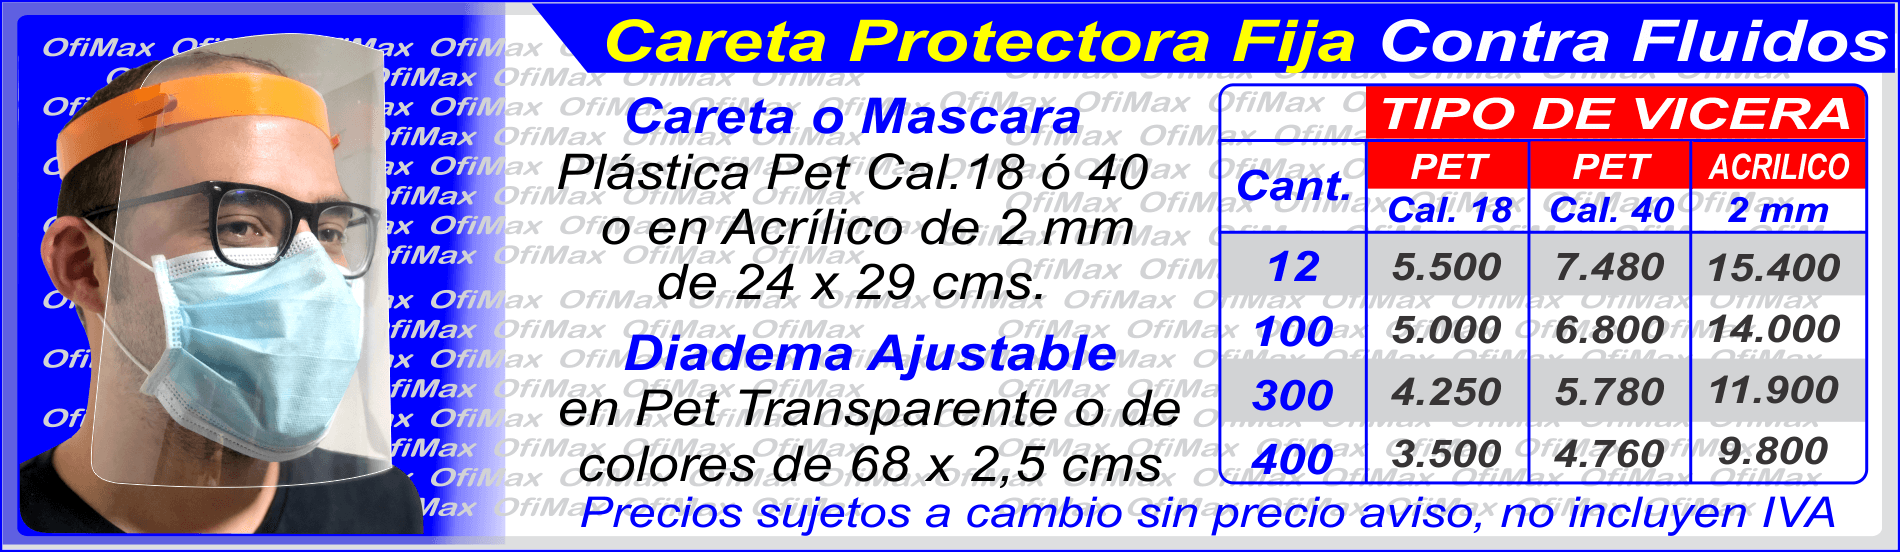 precios de caretas protectoras contra fluidos, colombia